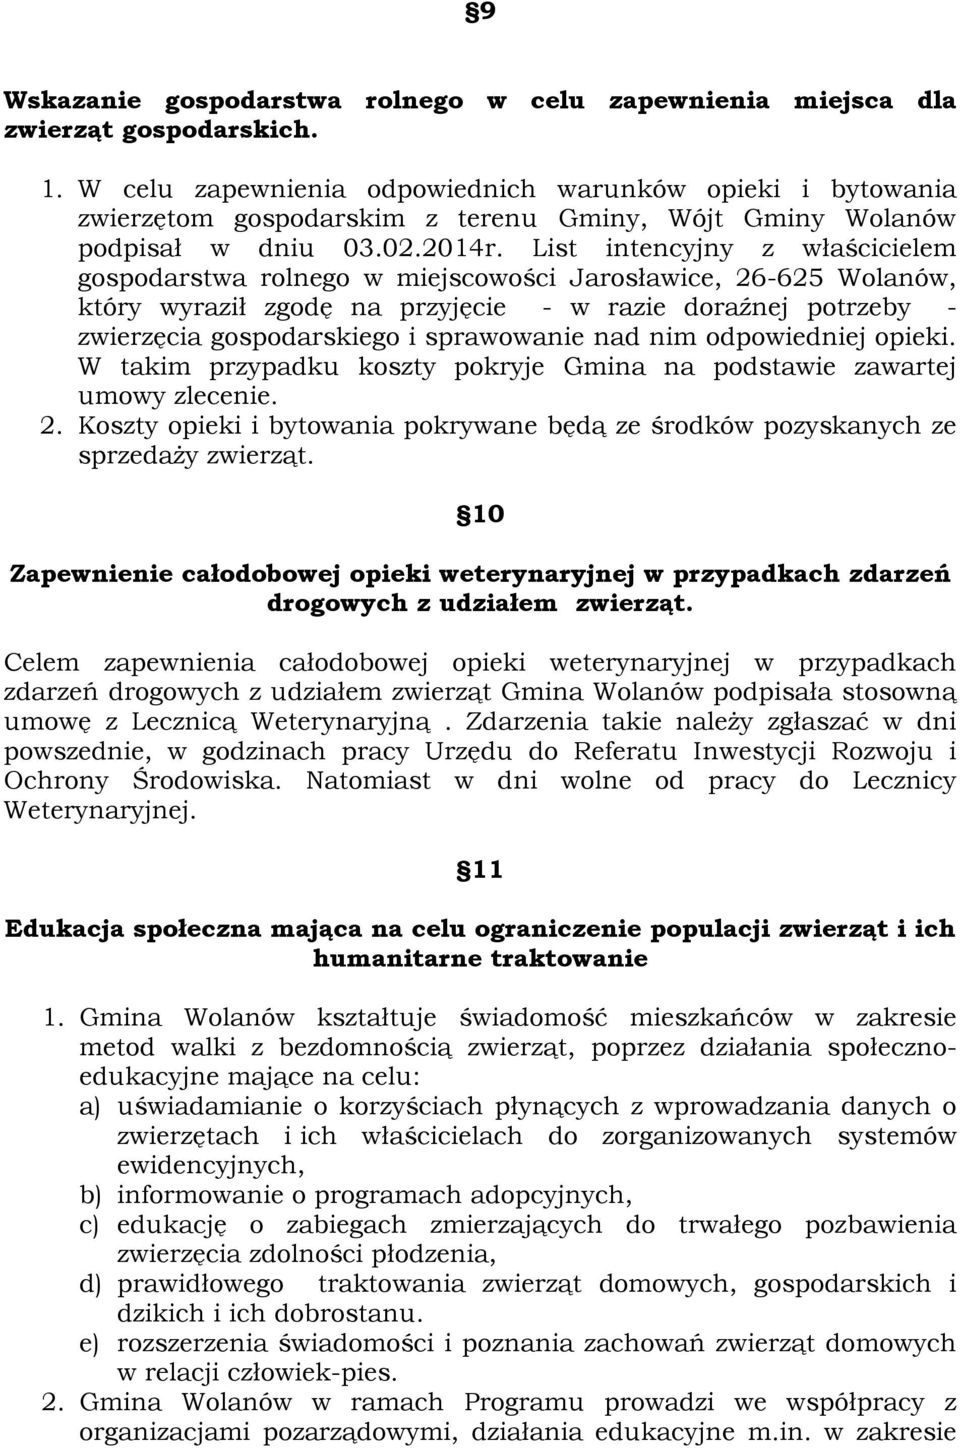 List intencyjny z właścicielem gospodarstwa rolnego w miejscowości Jarosławice, 26-625 Wolanów, który wyraził zgodę na przyjęcie - w razie doraźnej potrzeby - zwierzęcia gospodarskiego i sprawowanie